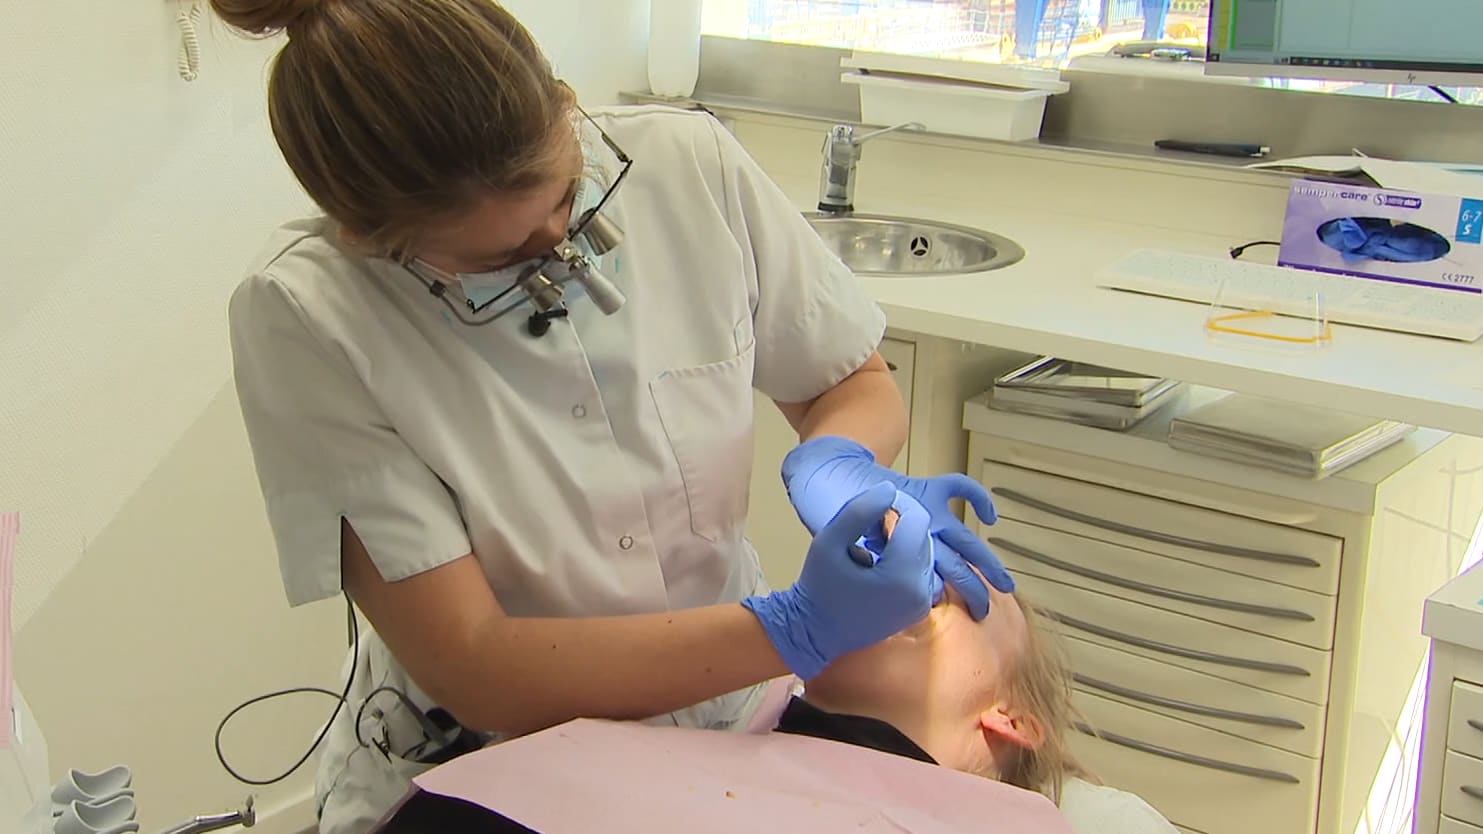 Tandartsen willen mondzorg in de basisverzekering: 'Zien dagelijks schrijnende gevolgen'